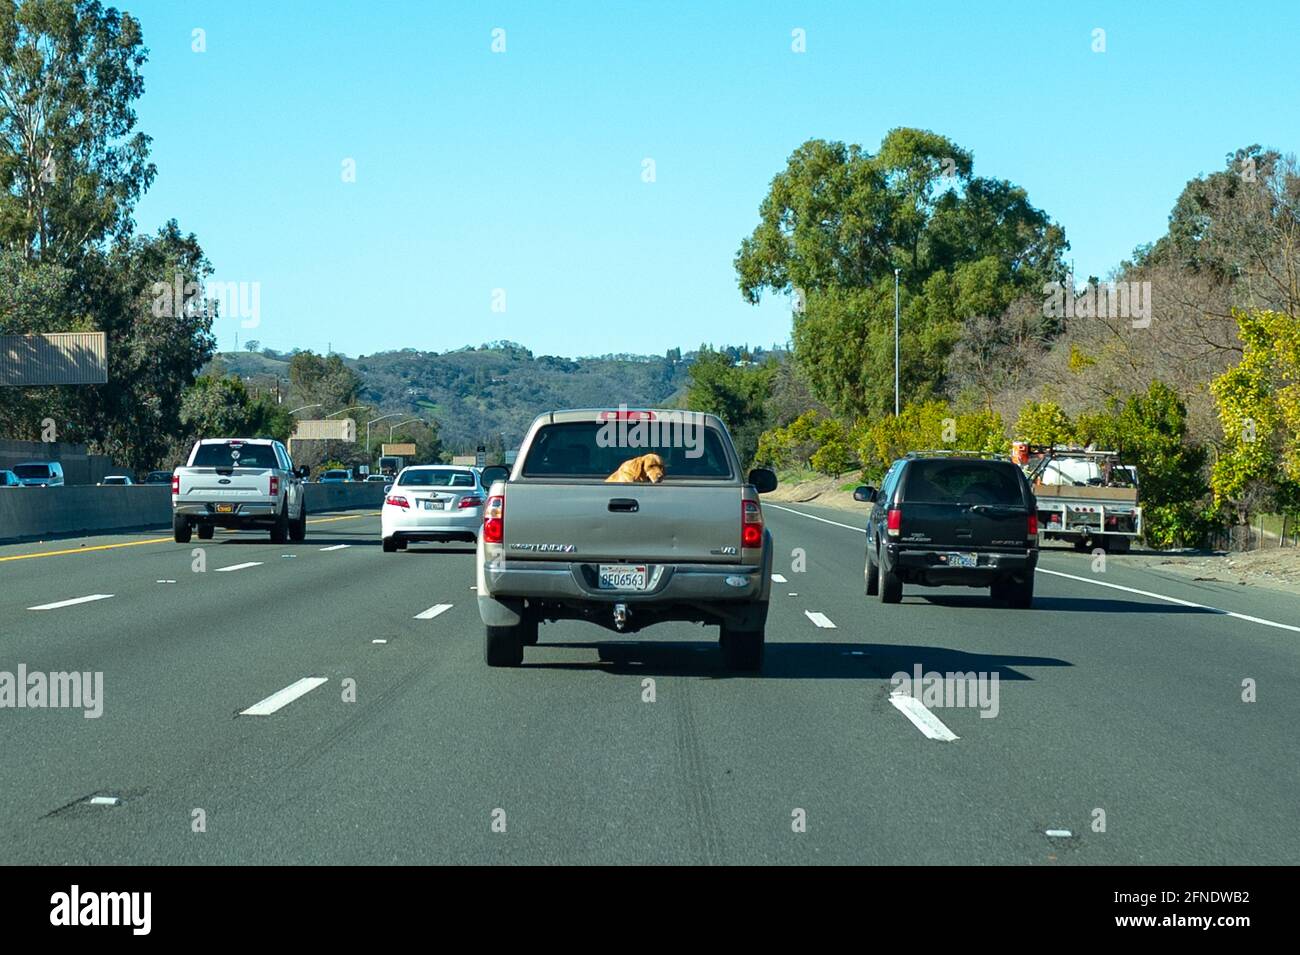 Photographie prise de l'intérieur d'une voiture avec des véhicules roulant sur une autoroute et un blond d'or à l'arrière d'un pick-up, 5 février 2021. () Banque D'Images